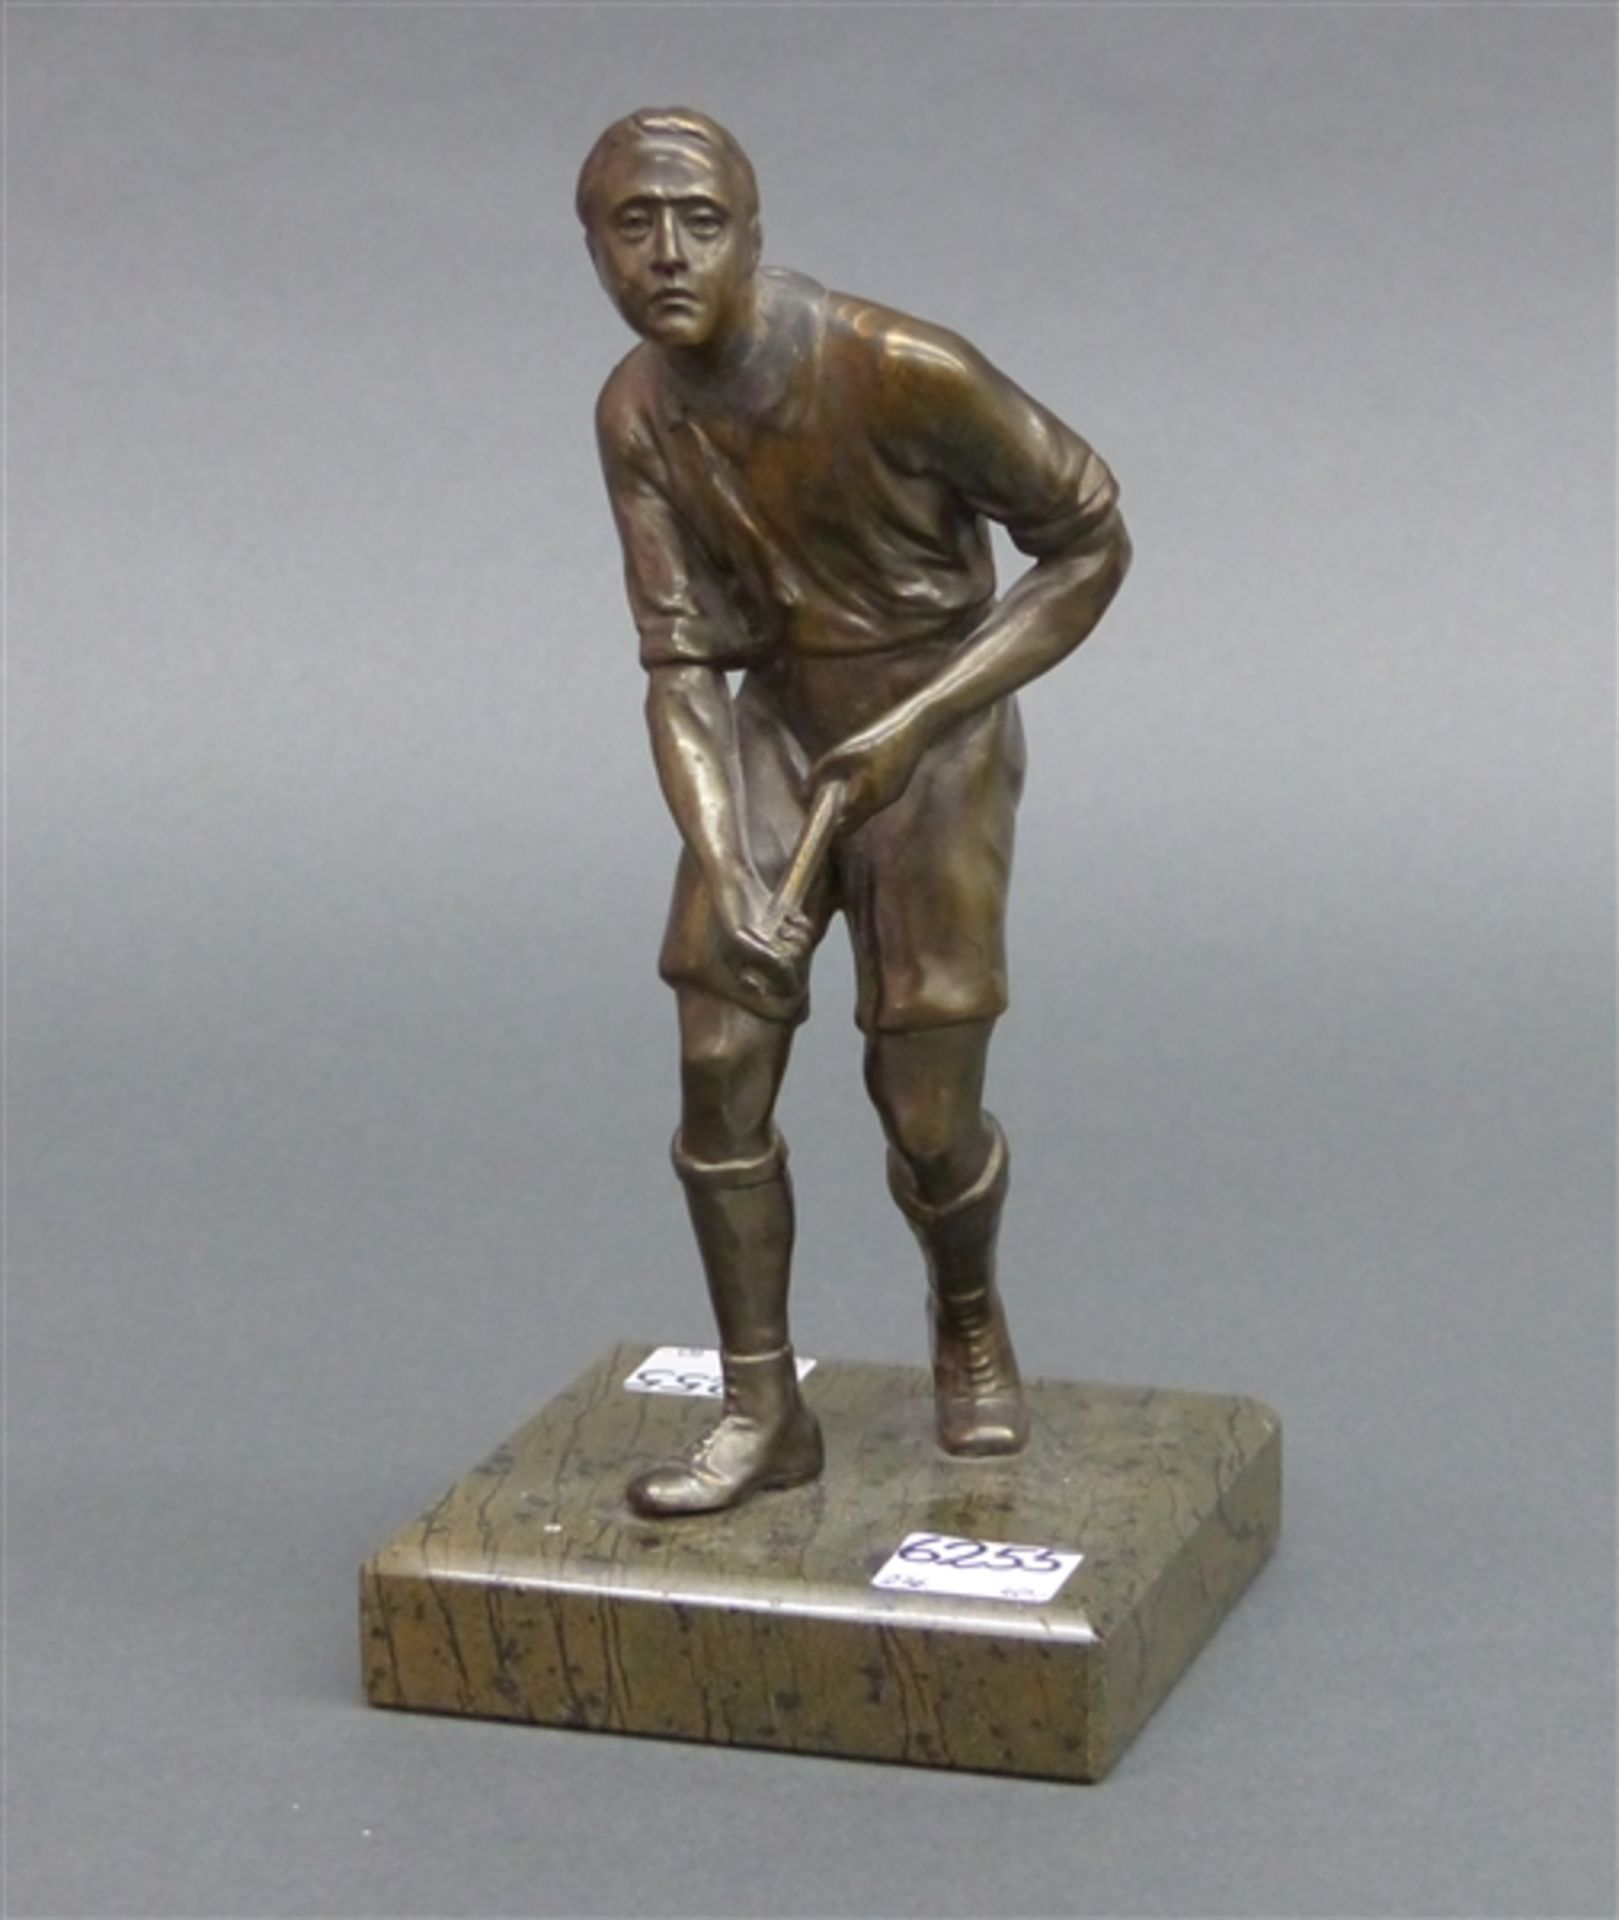 Gussskulptur um 1920, Sportler, Schläger beschädigt, auf Marmorsockel, h 20 cm,